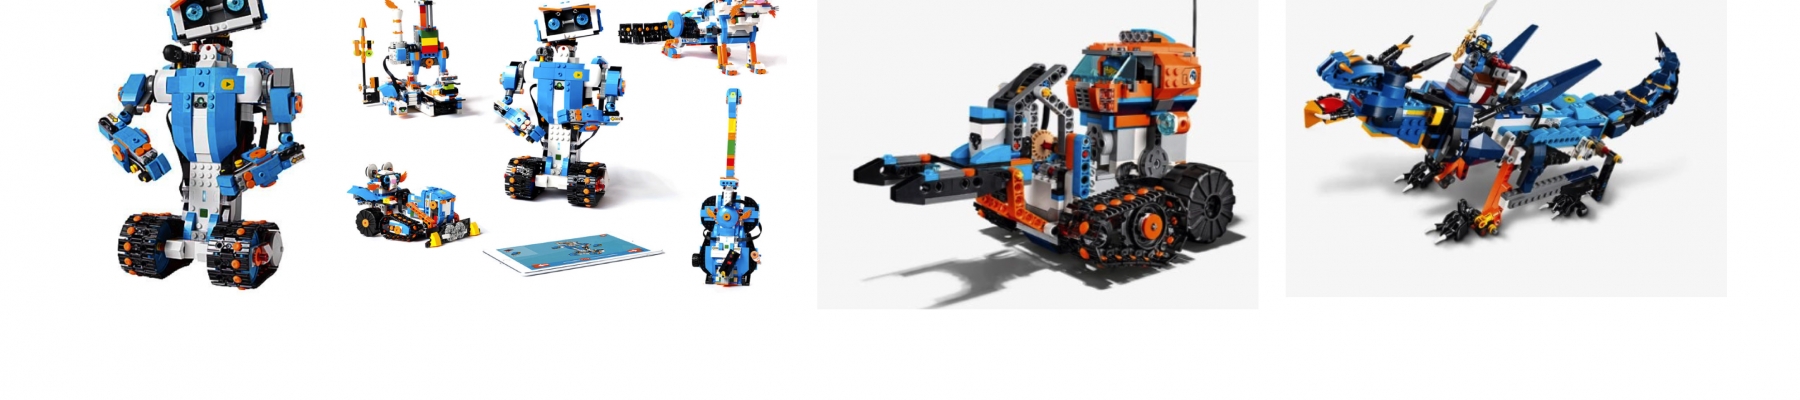 ROBOT BOUWEN MET LEGO BOOST (22 januari)